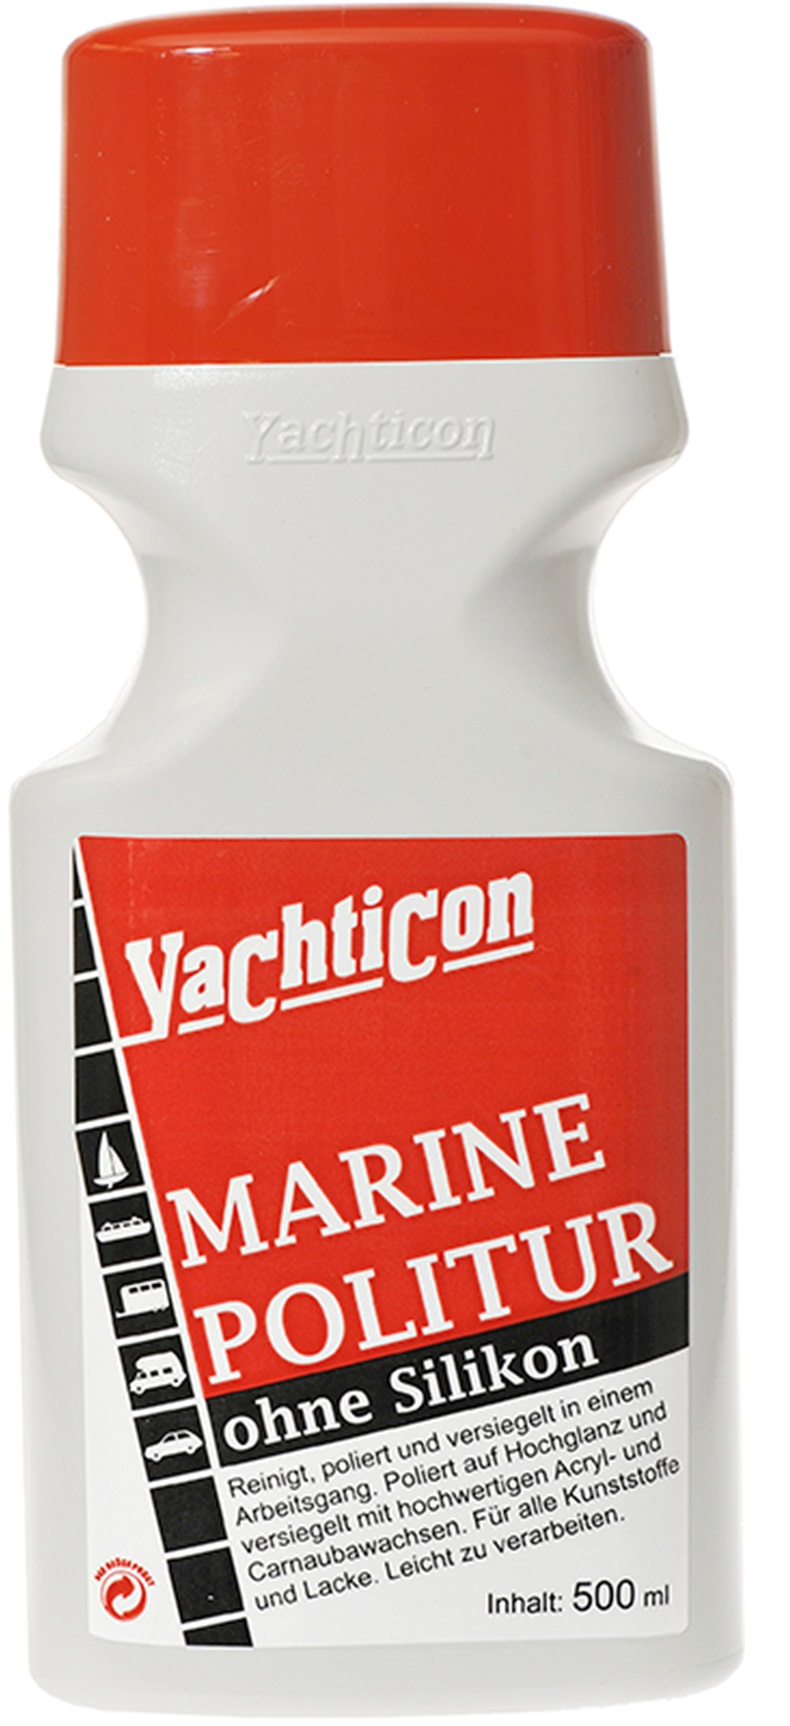 yachticon marine politur